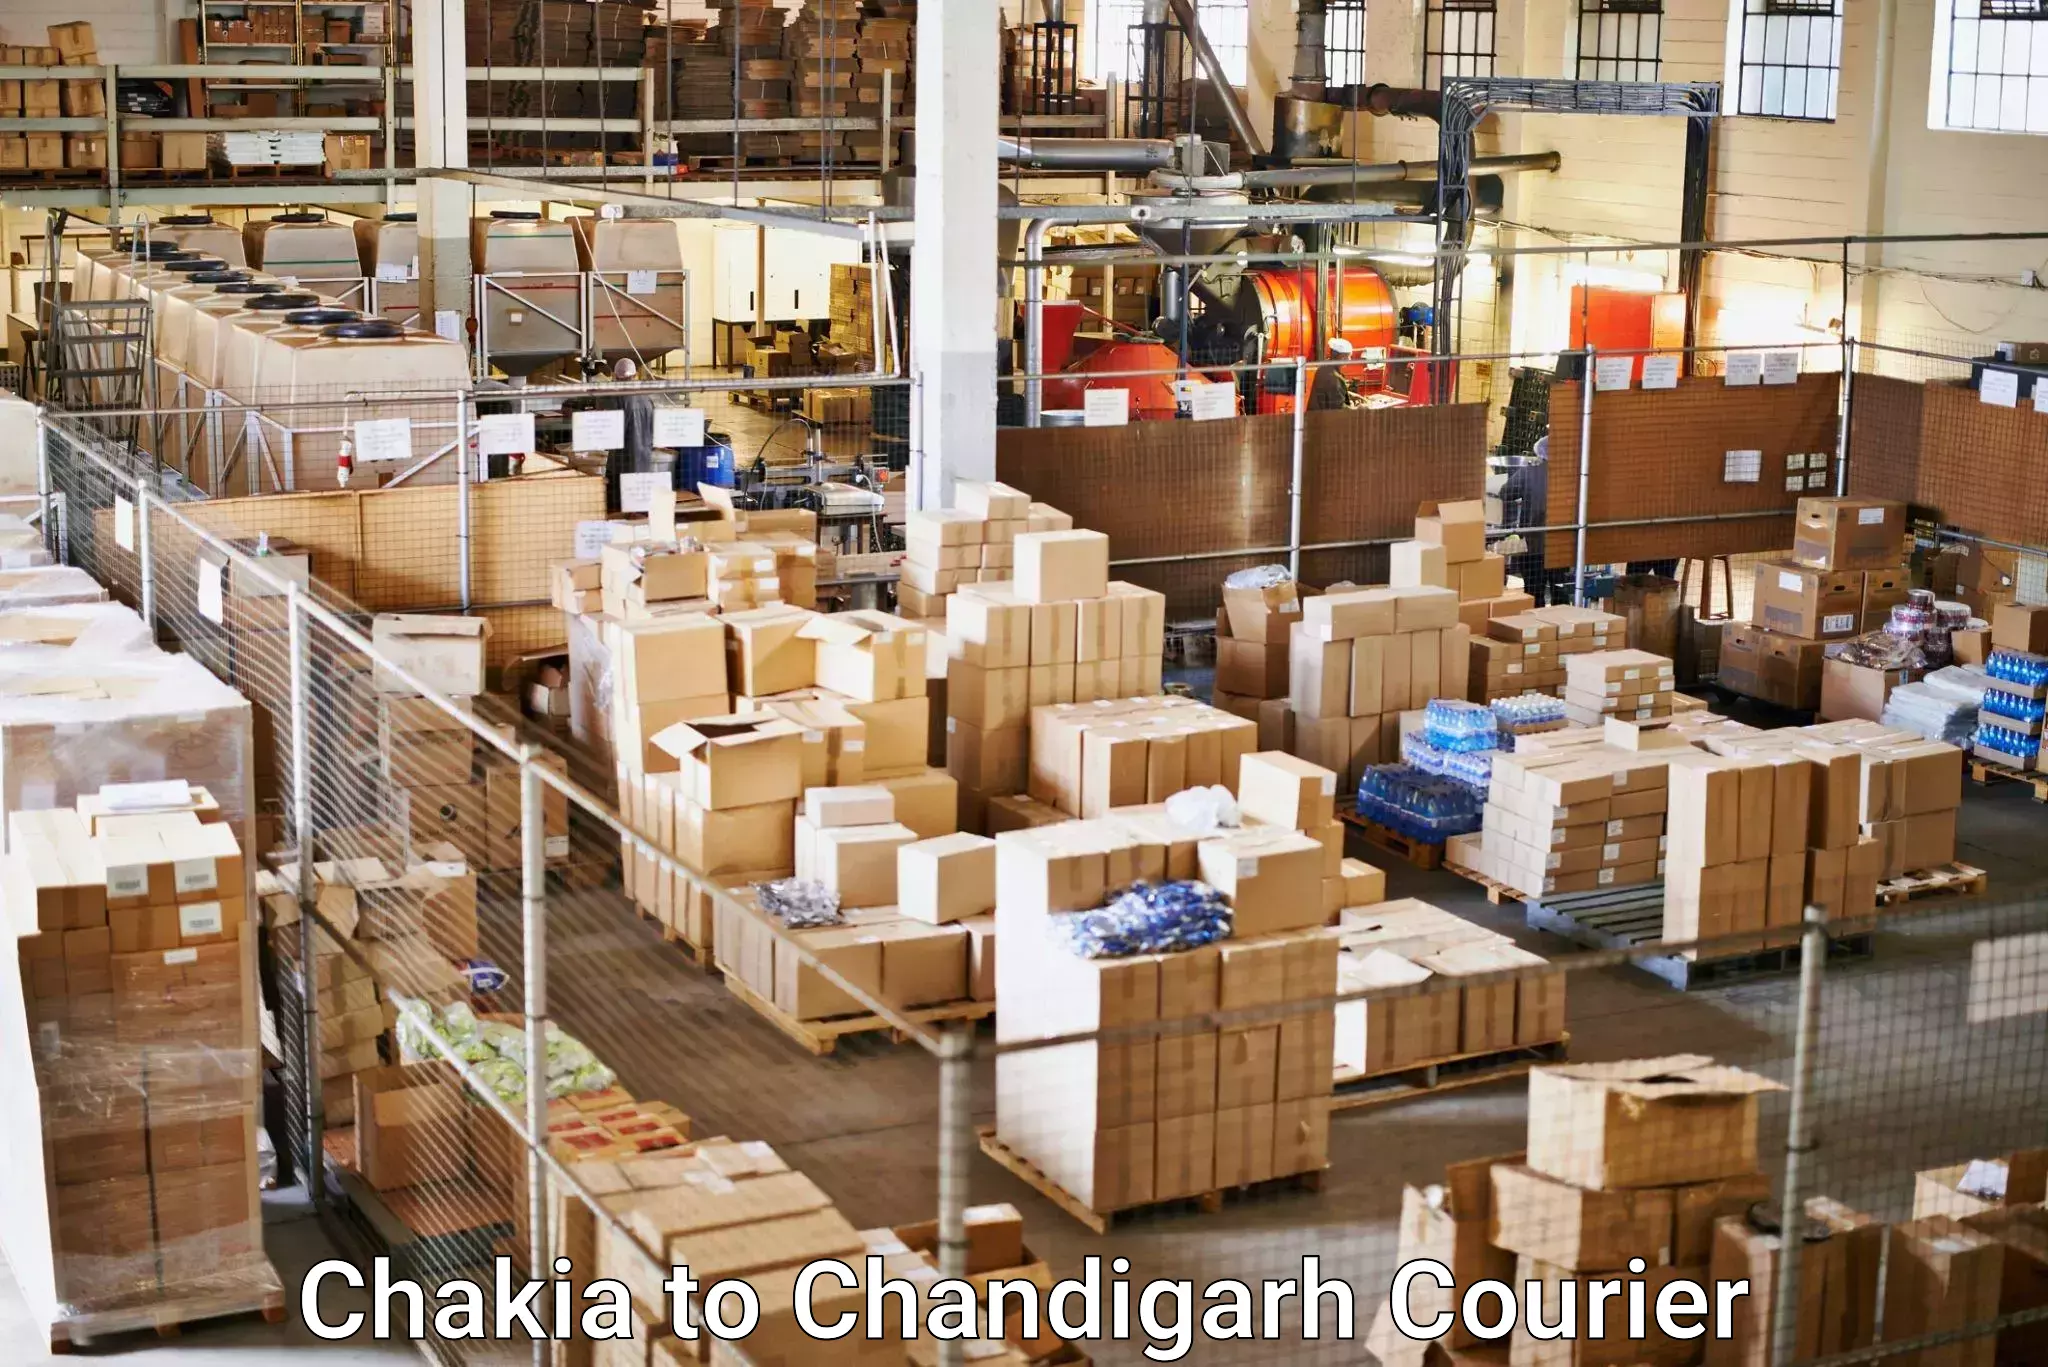 International parcel service Chakia to Panjab University Chandigarh